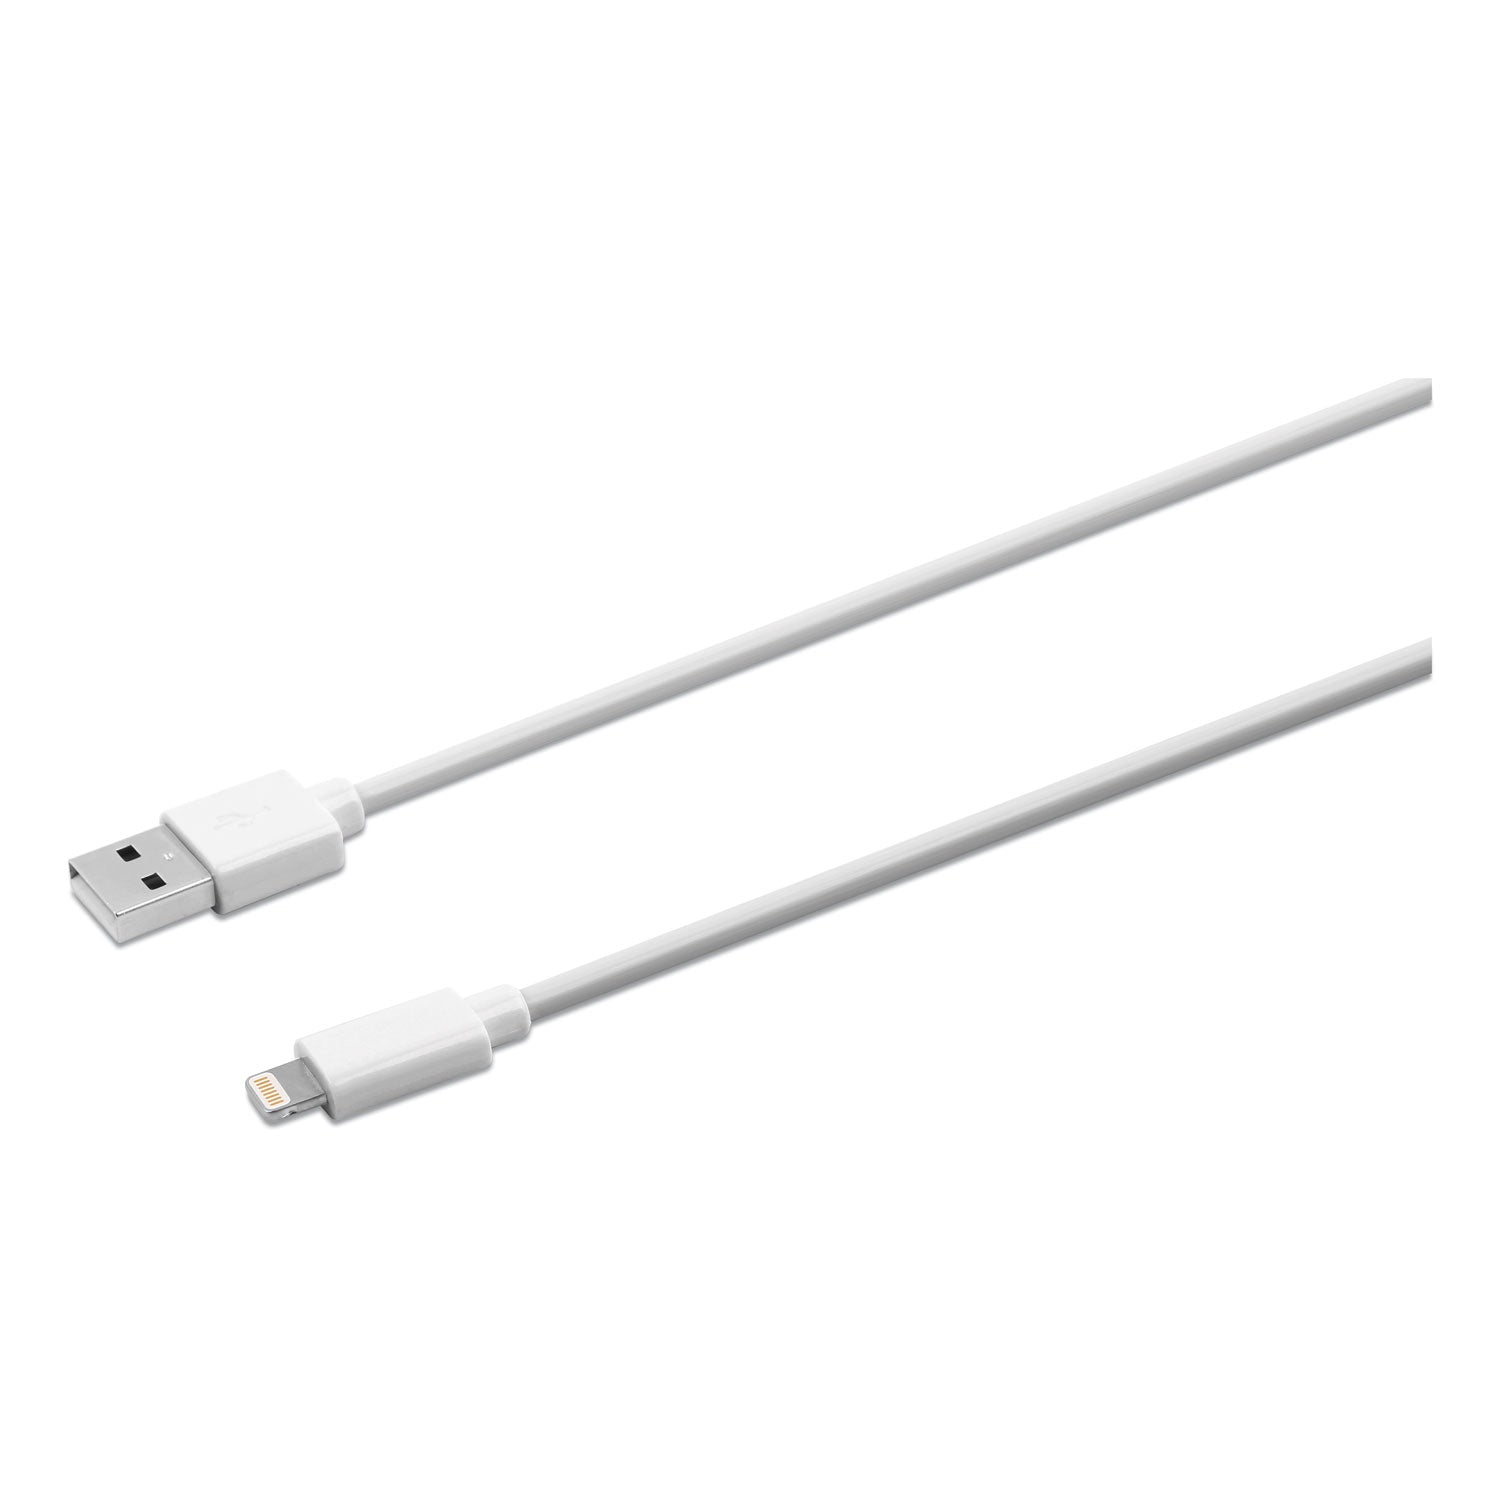 usb-apple-lightning-cable-6-ft-white_ivr30020 - 1